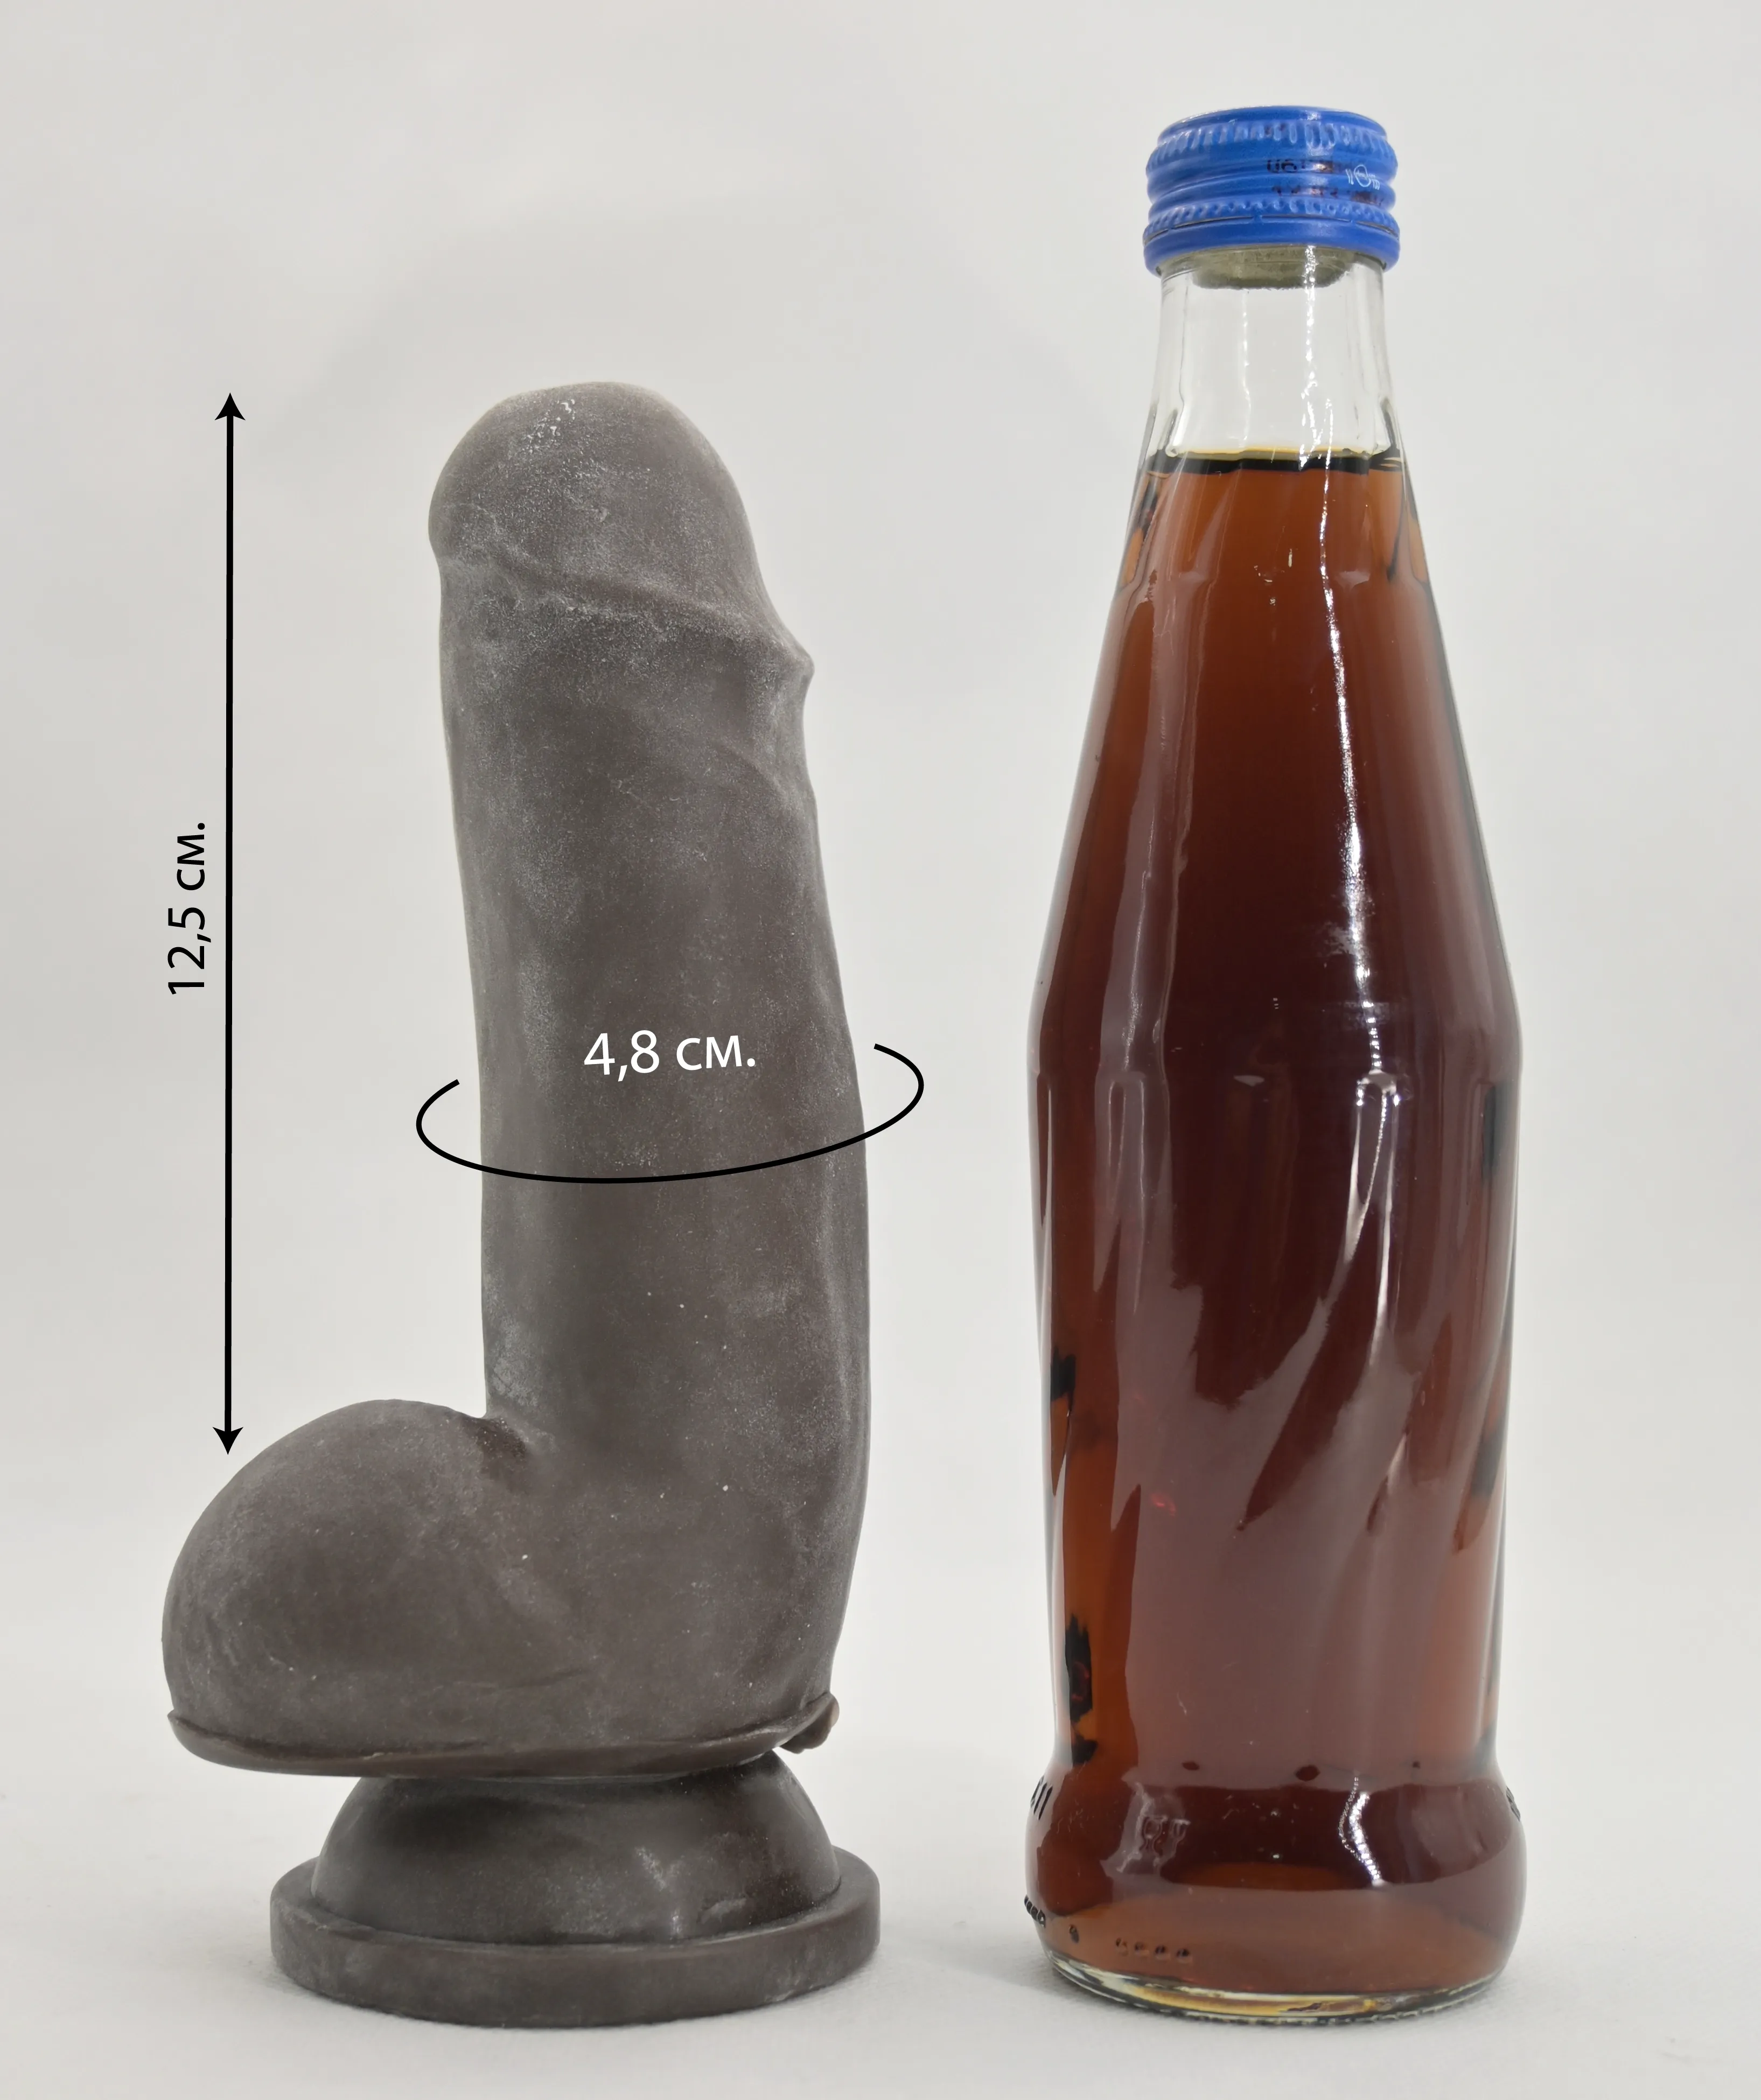 Размеры и сравнение дилдо Lecher Brown с бутылкой газировки 0,33 л.